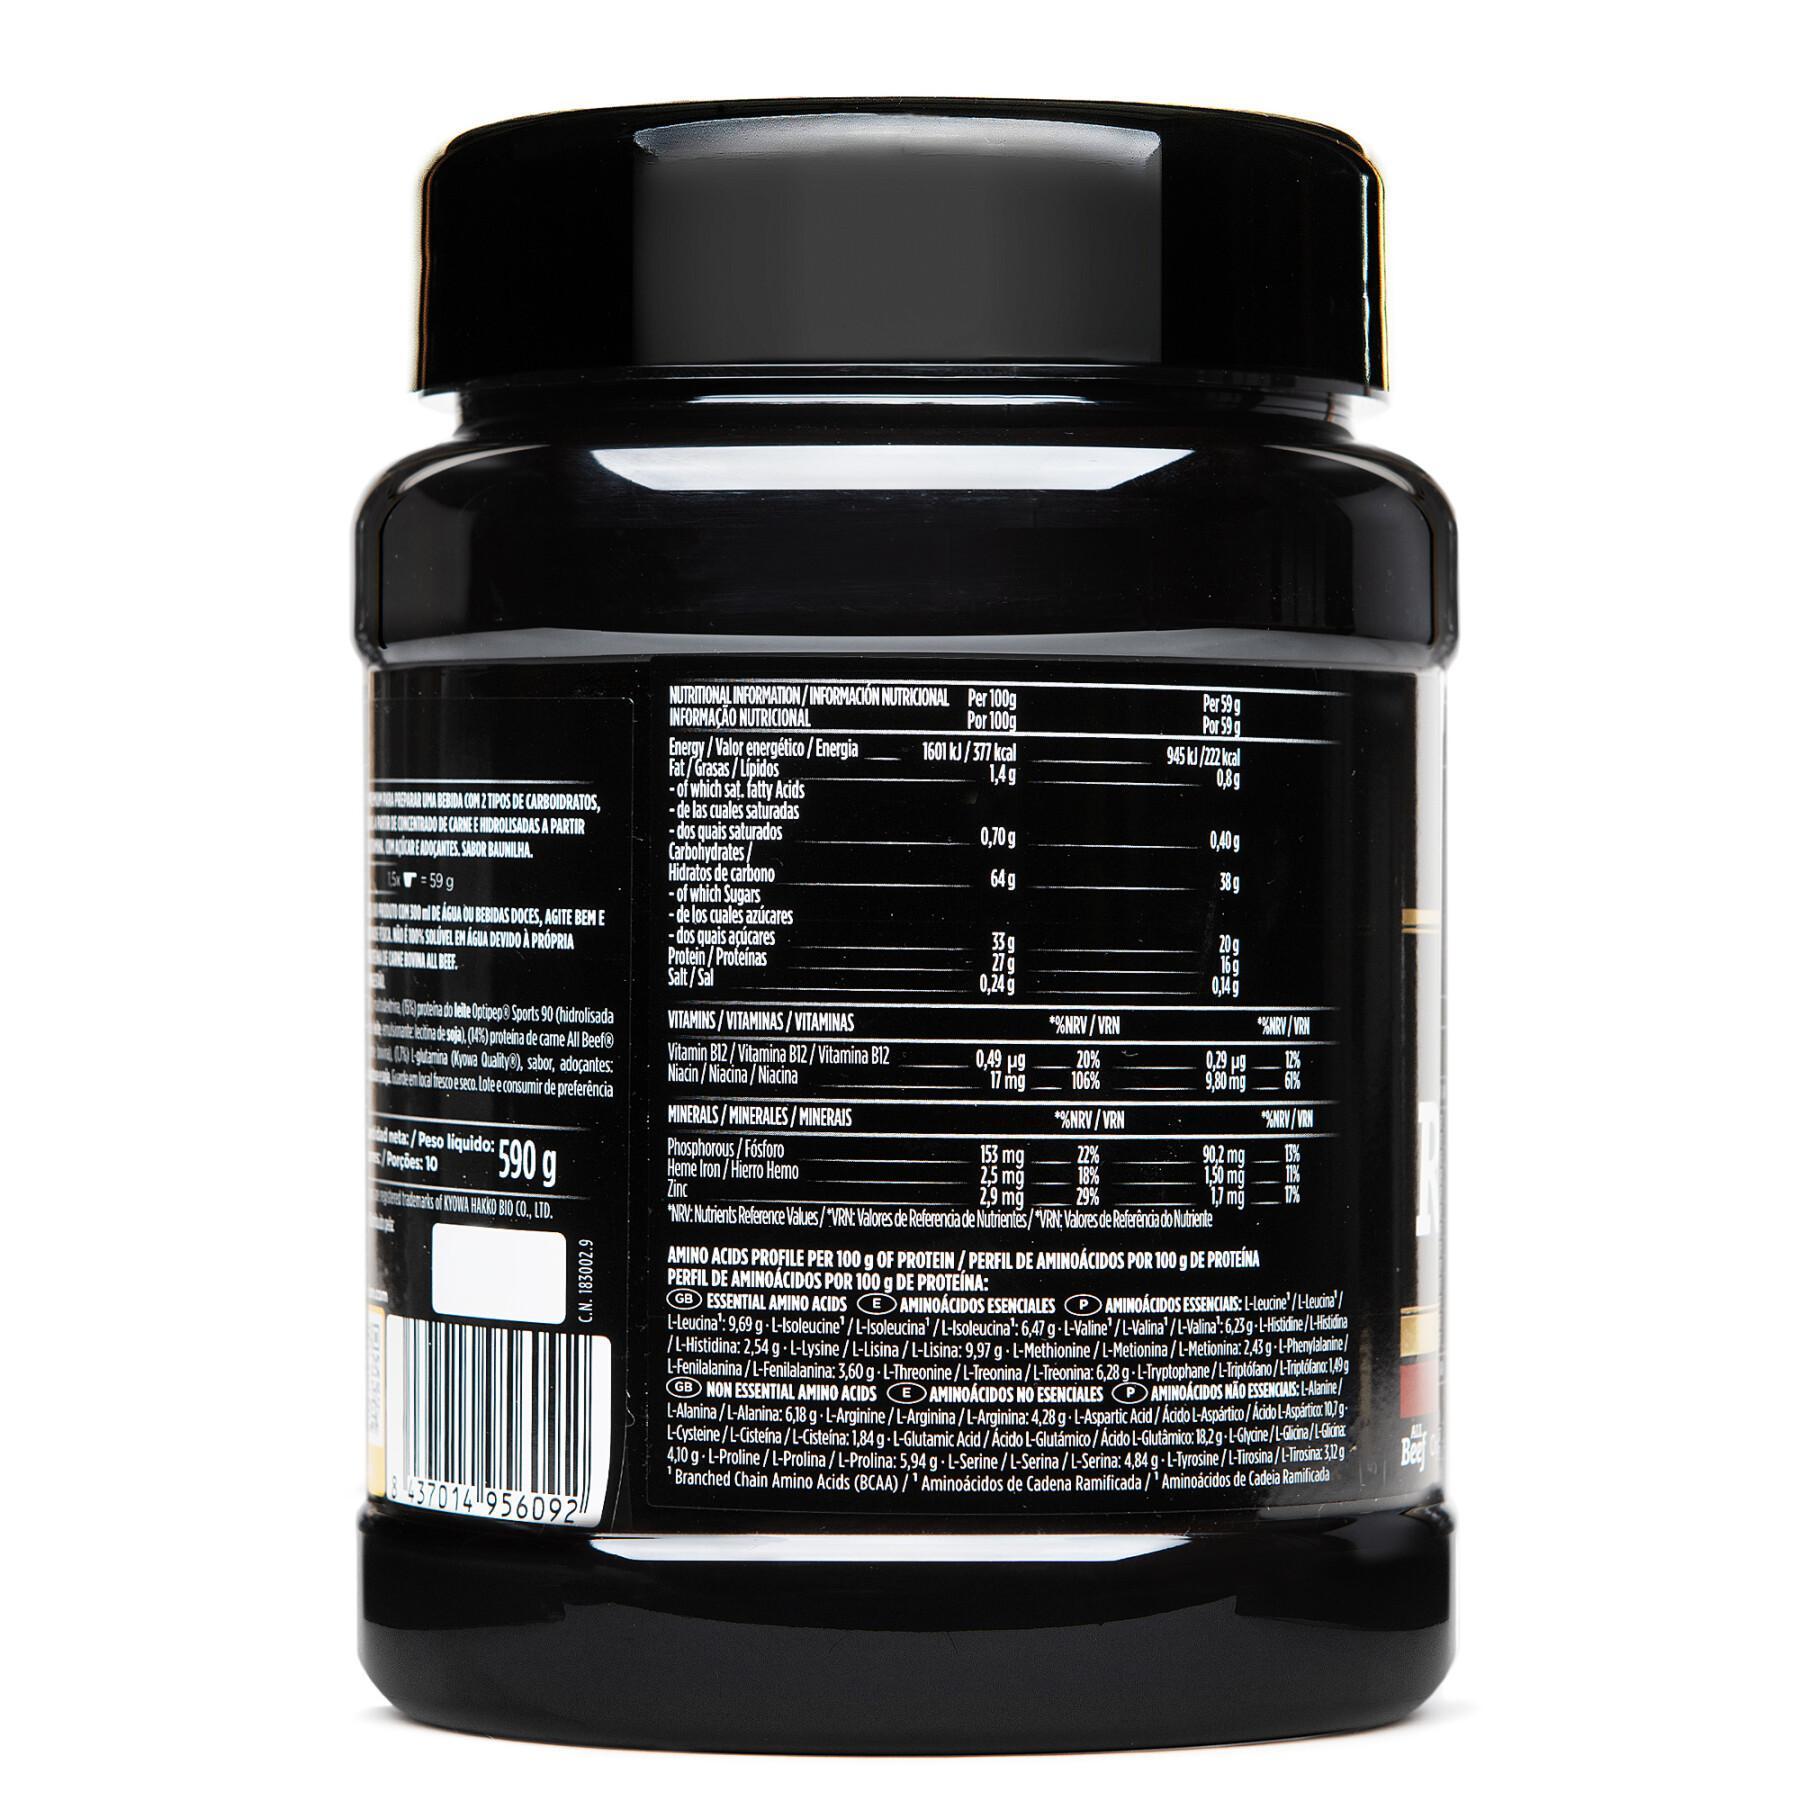 Ergänzung zur Erholung Crown Sport Nutrition 3:1 Pro St - vanille - 590 g